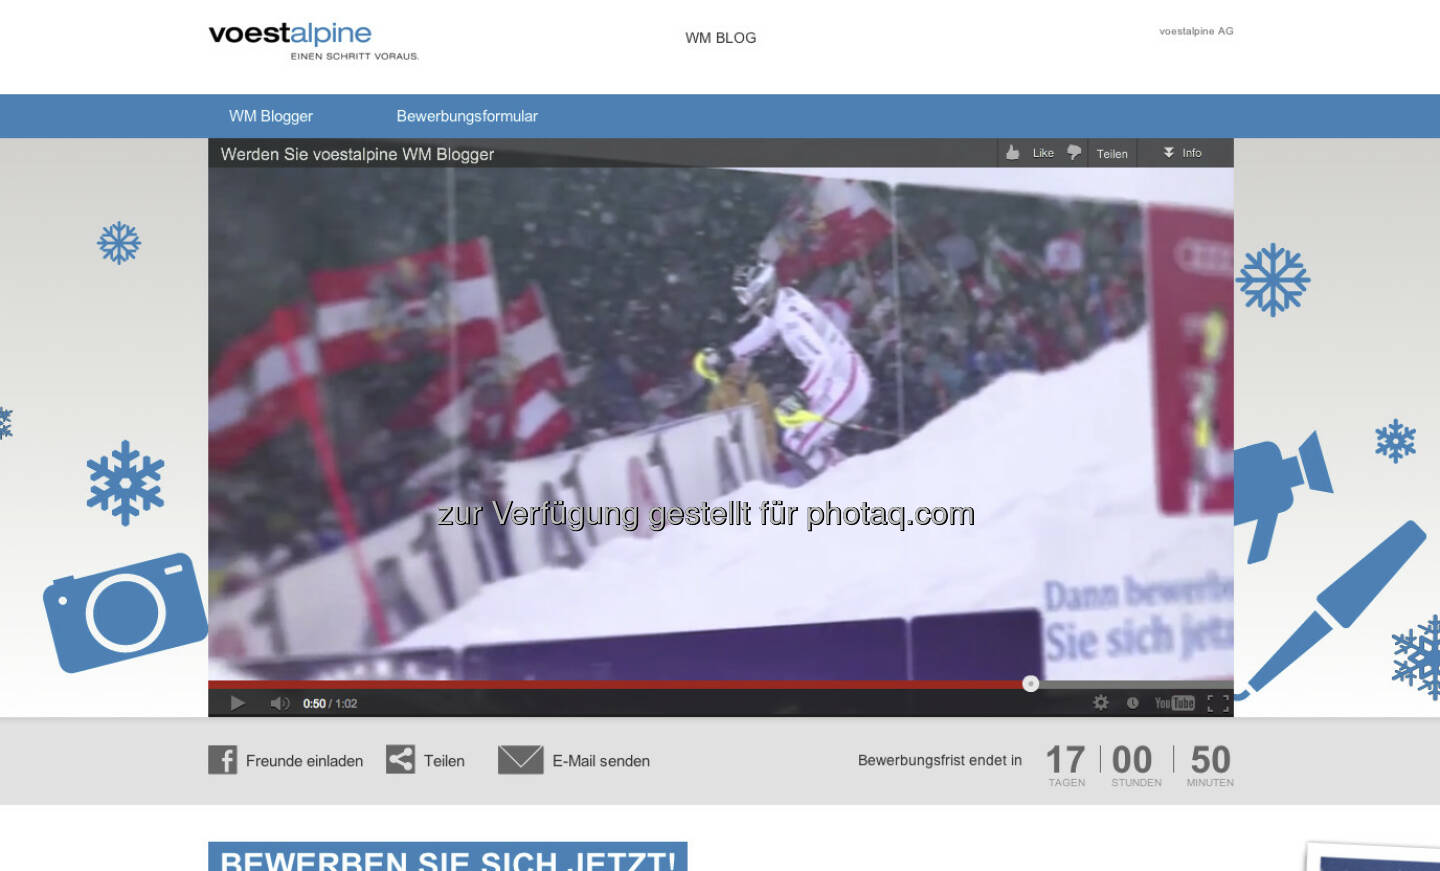 voestalpine und Eurosport suchen zwei skibegeisterte WM Blogger - wer will zwei Wochen lang direkt von der FIS Alpine Ski-WM 2013 Schladming official site berichten? http://bit.ly/VKJSRo